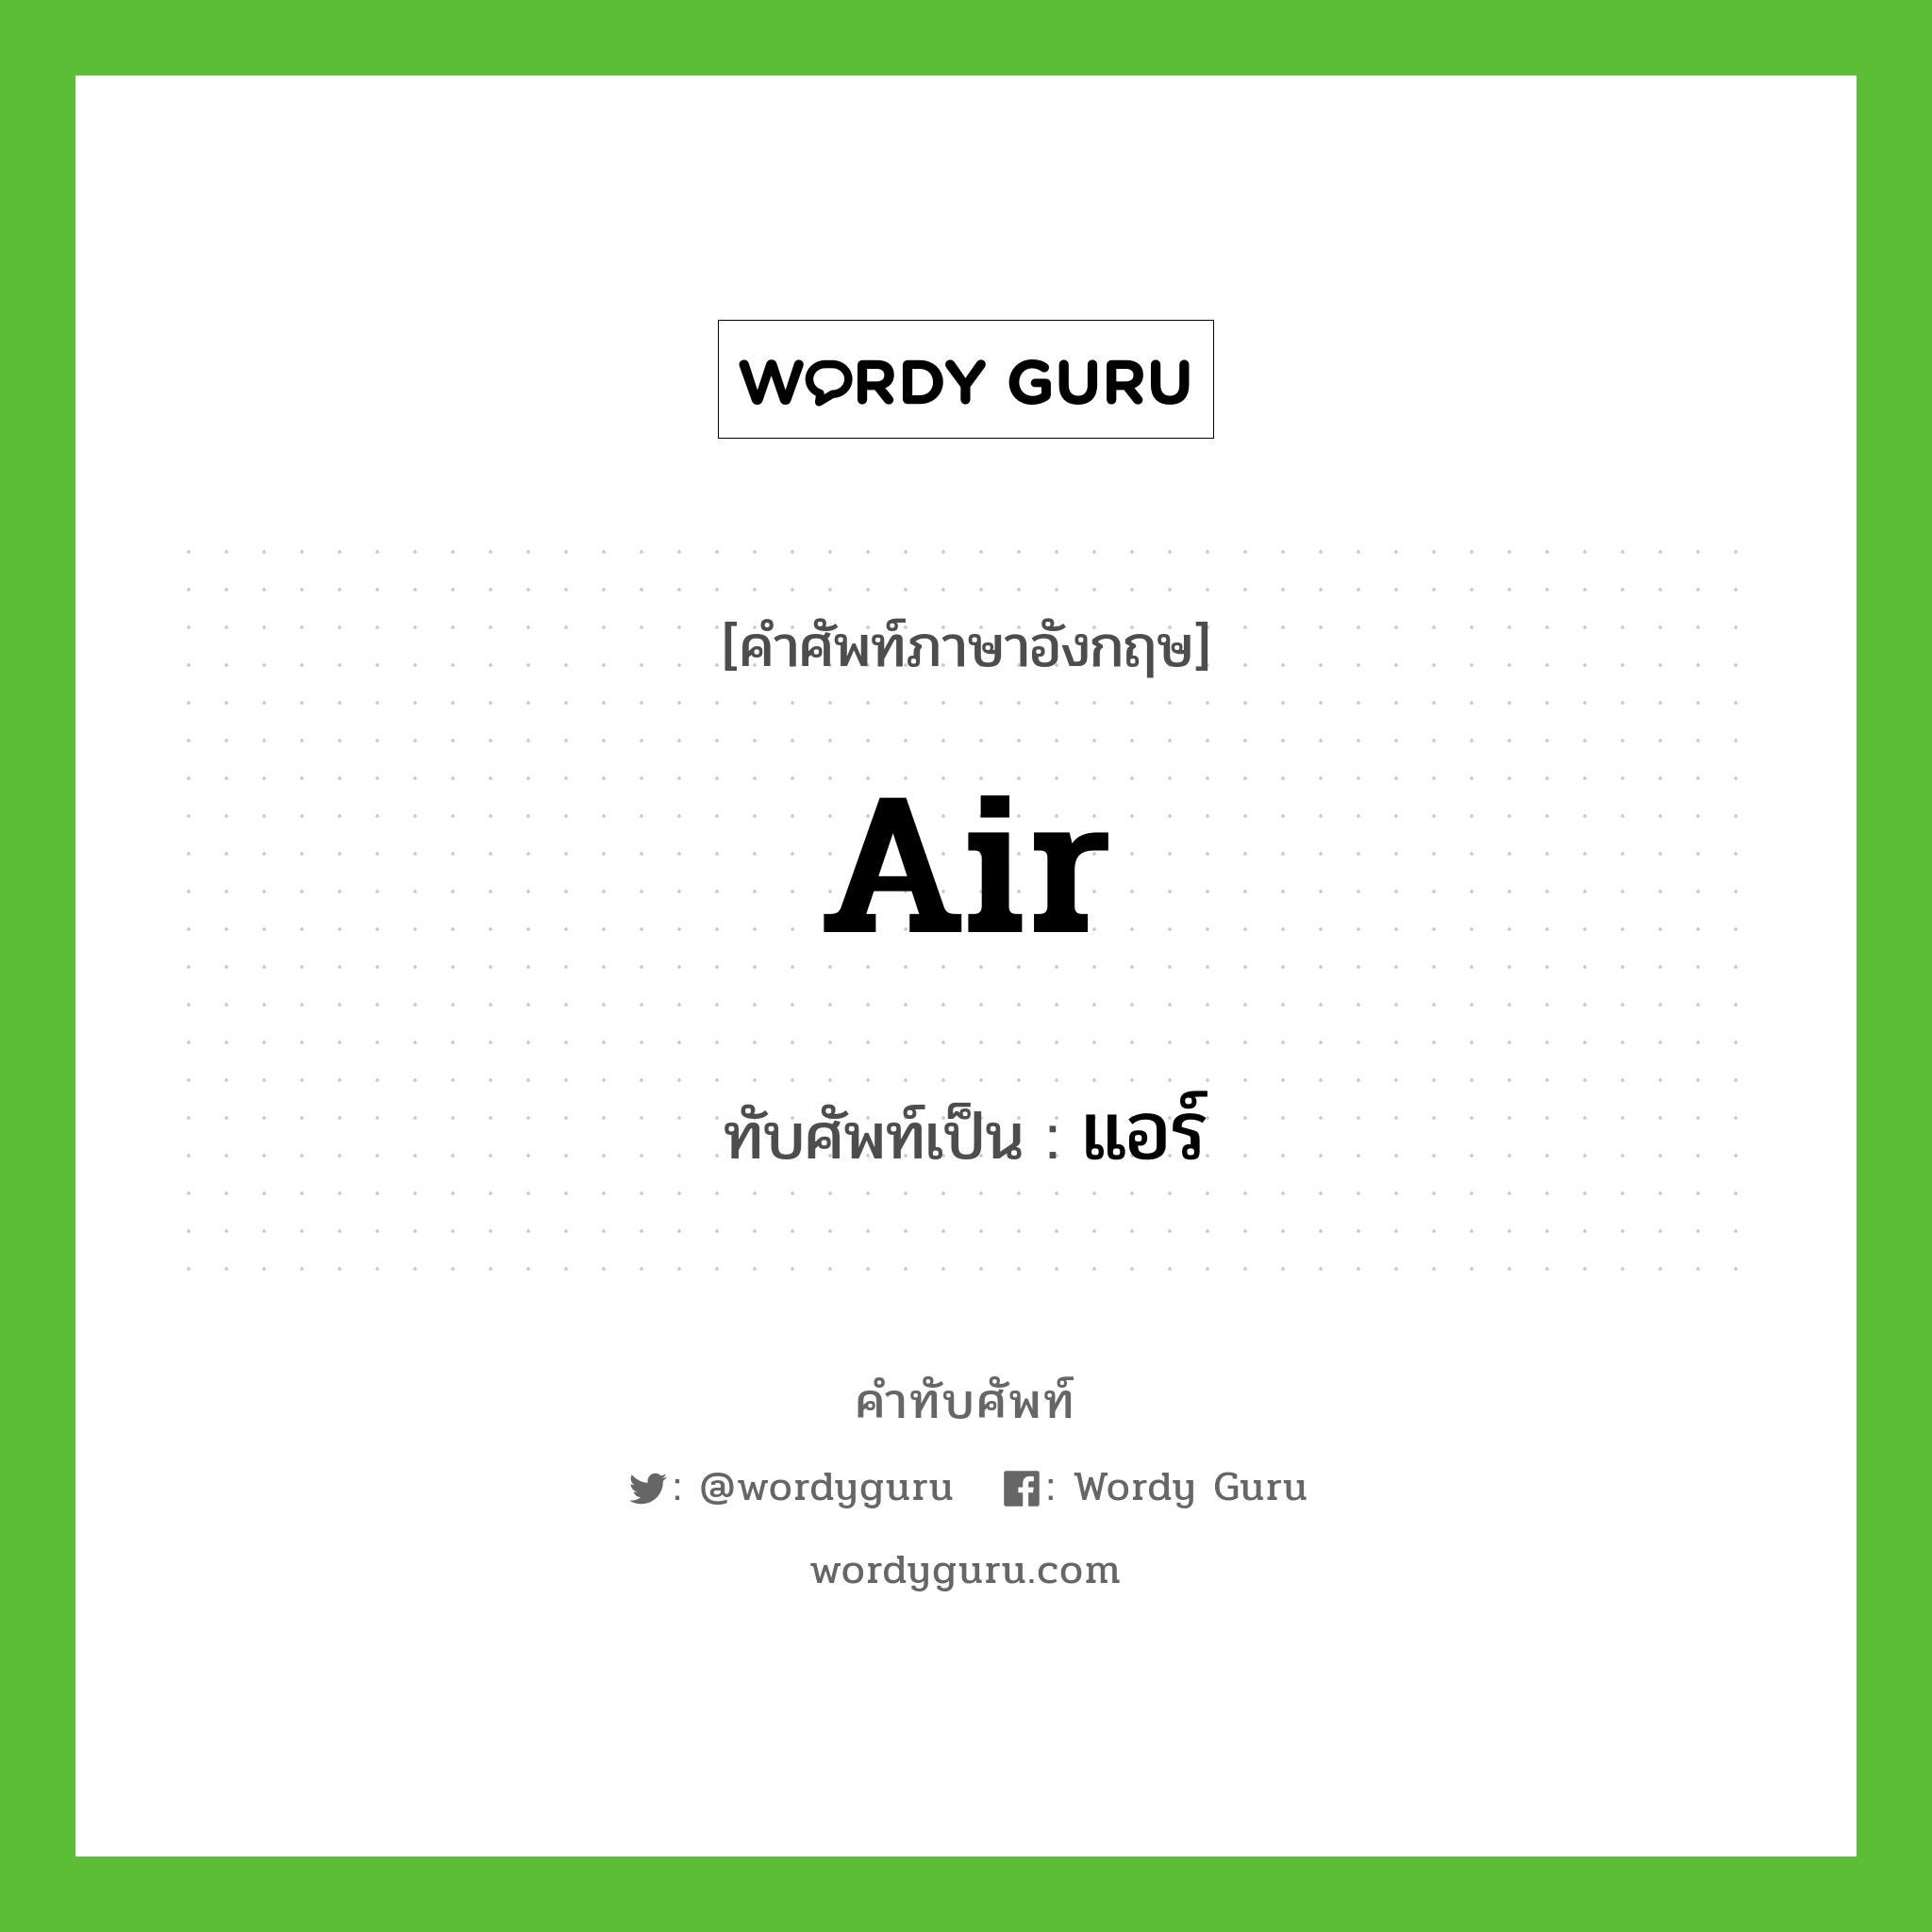 air เขียนเป็นคำไทยว่าอะไร?, คำศัพท์ภาษาอังกฤษ air ทับศัพท์เป็น แอร์